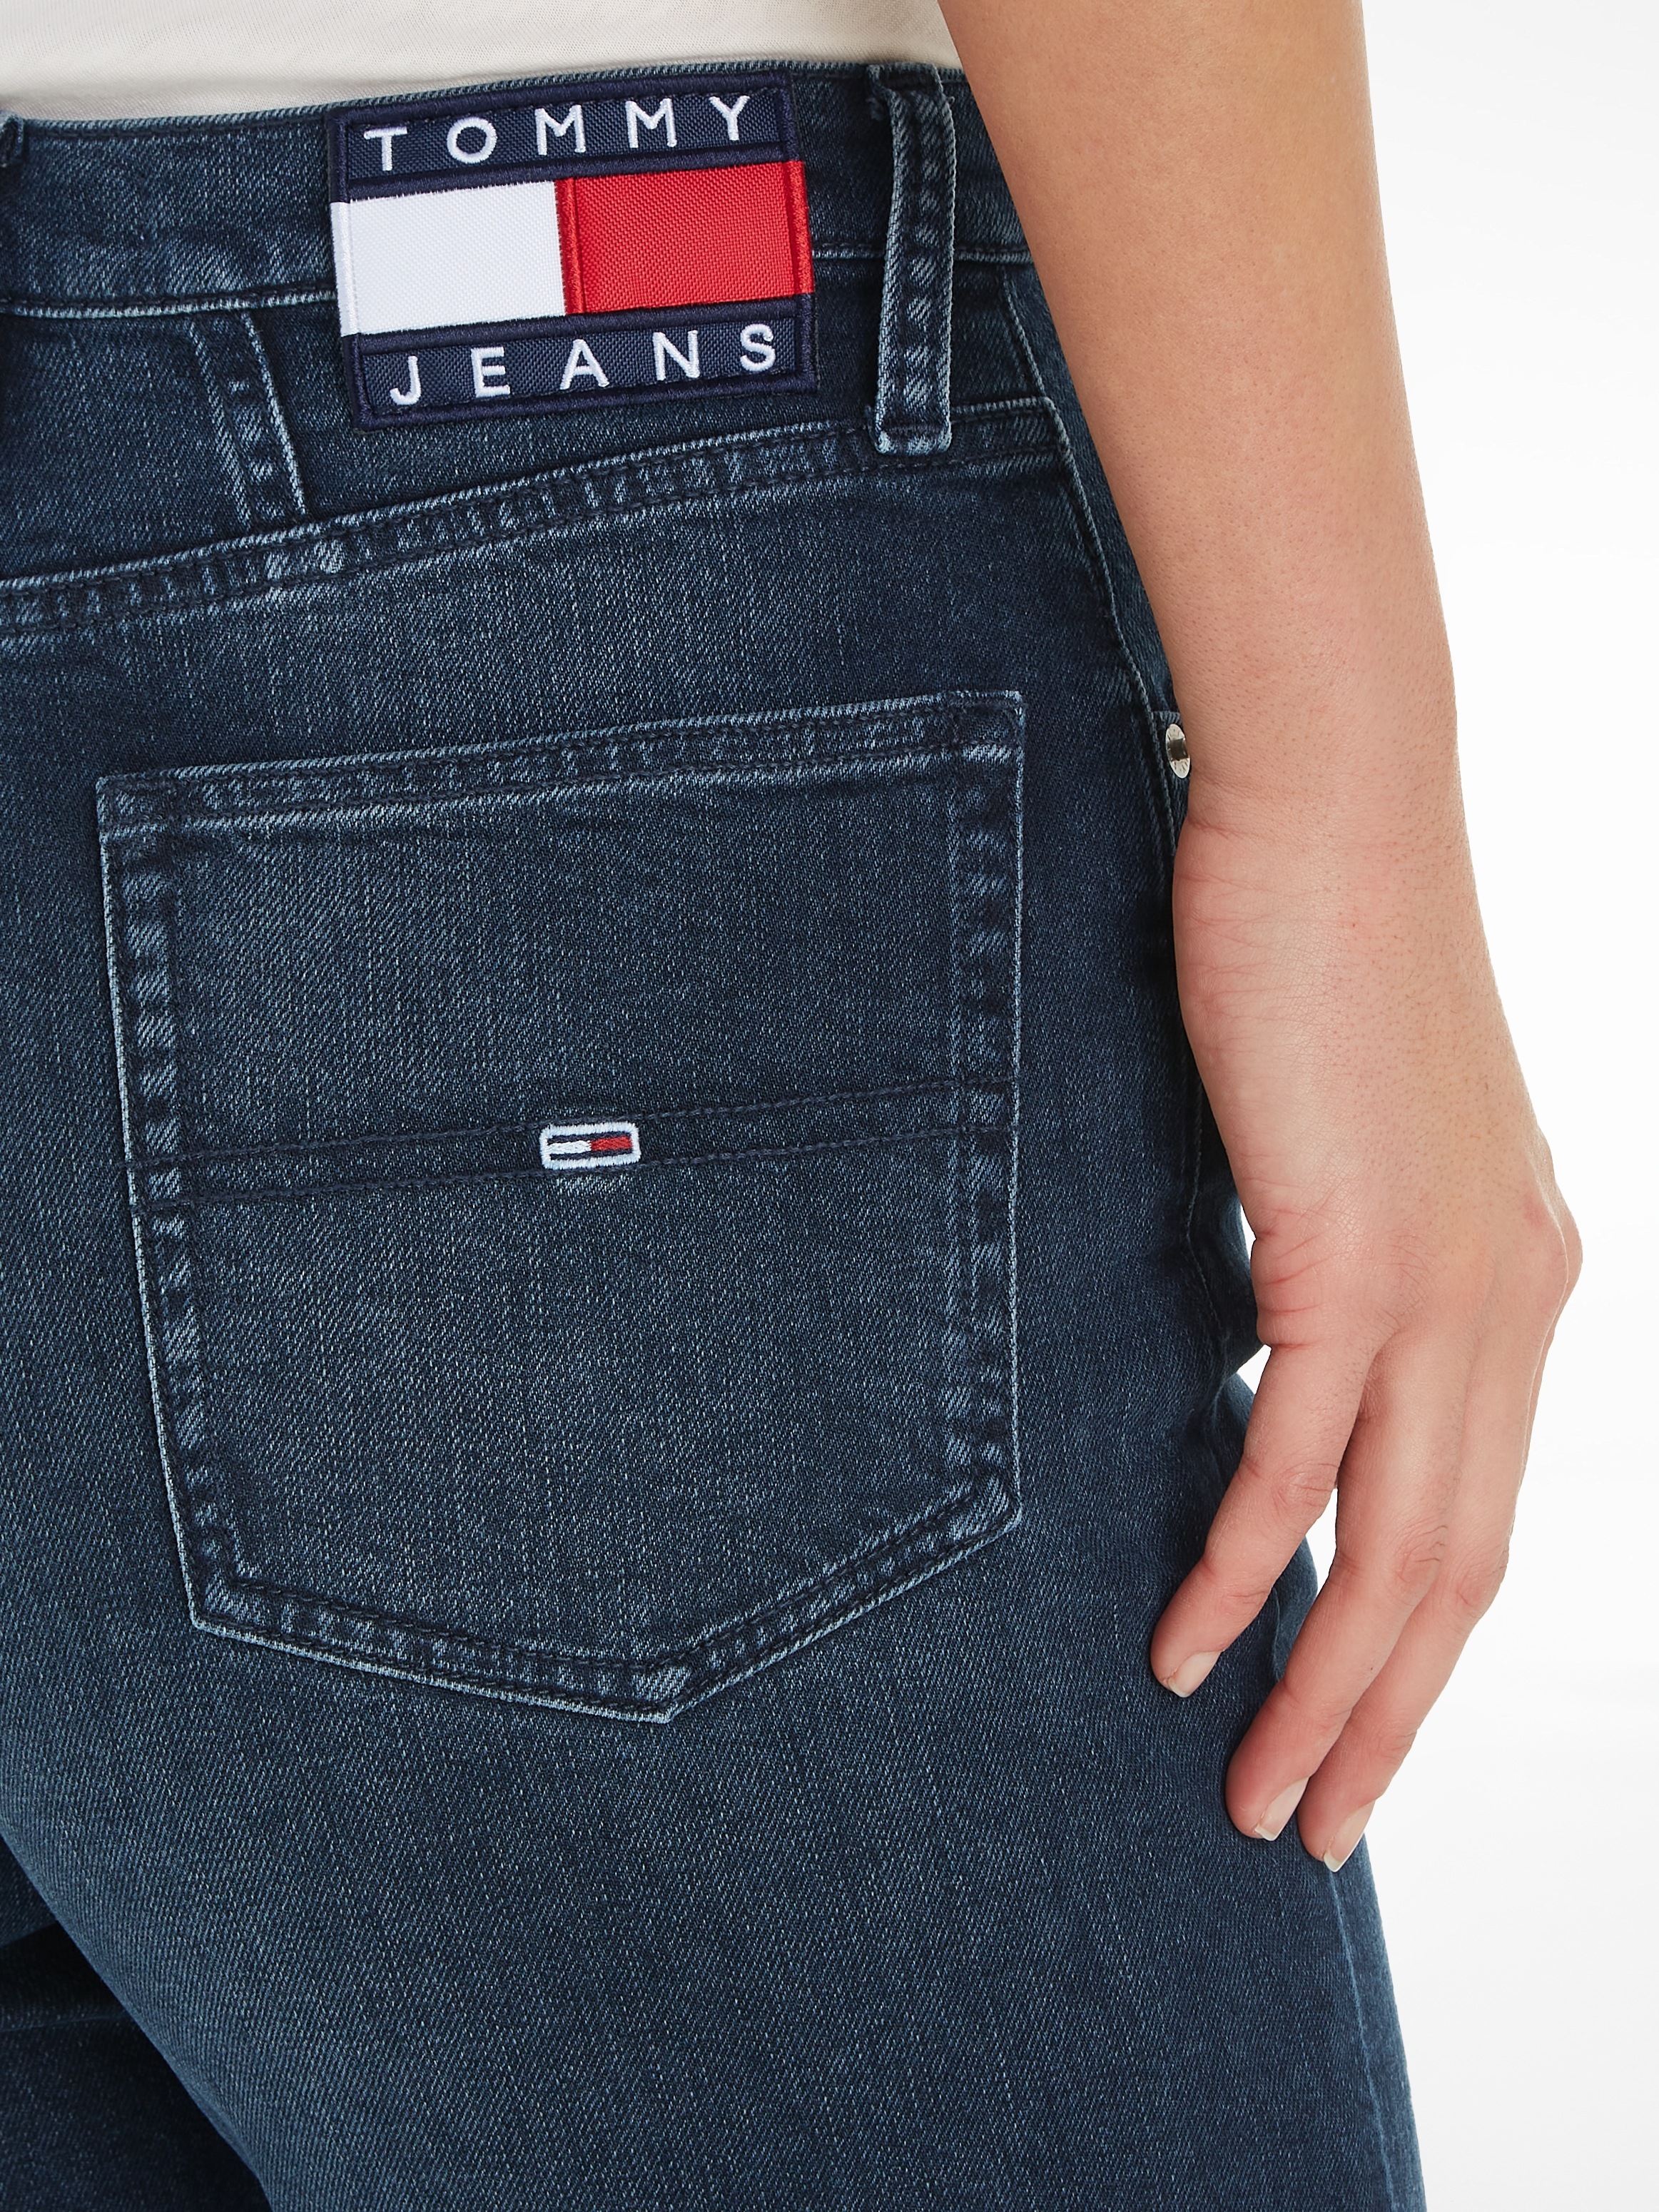 Labelflags für TPR Logobadge Jeans | UHR BAUR »MOM bestellen JEAN und CG5136«, Tommy Mom-Jeans mit